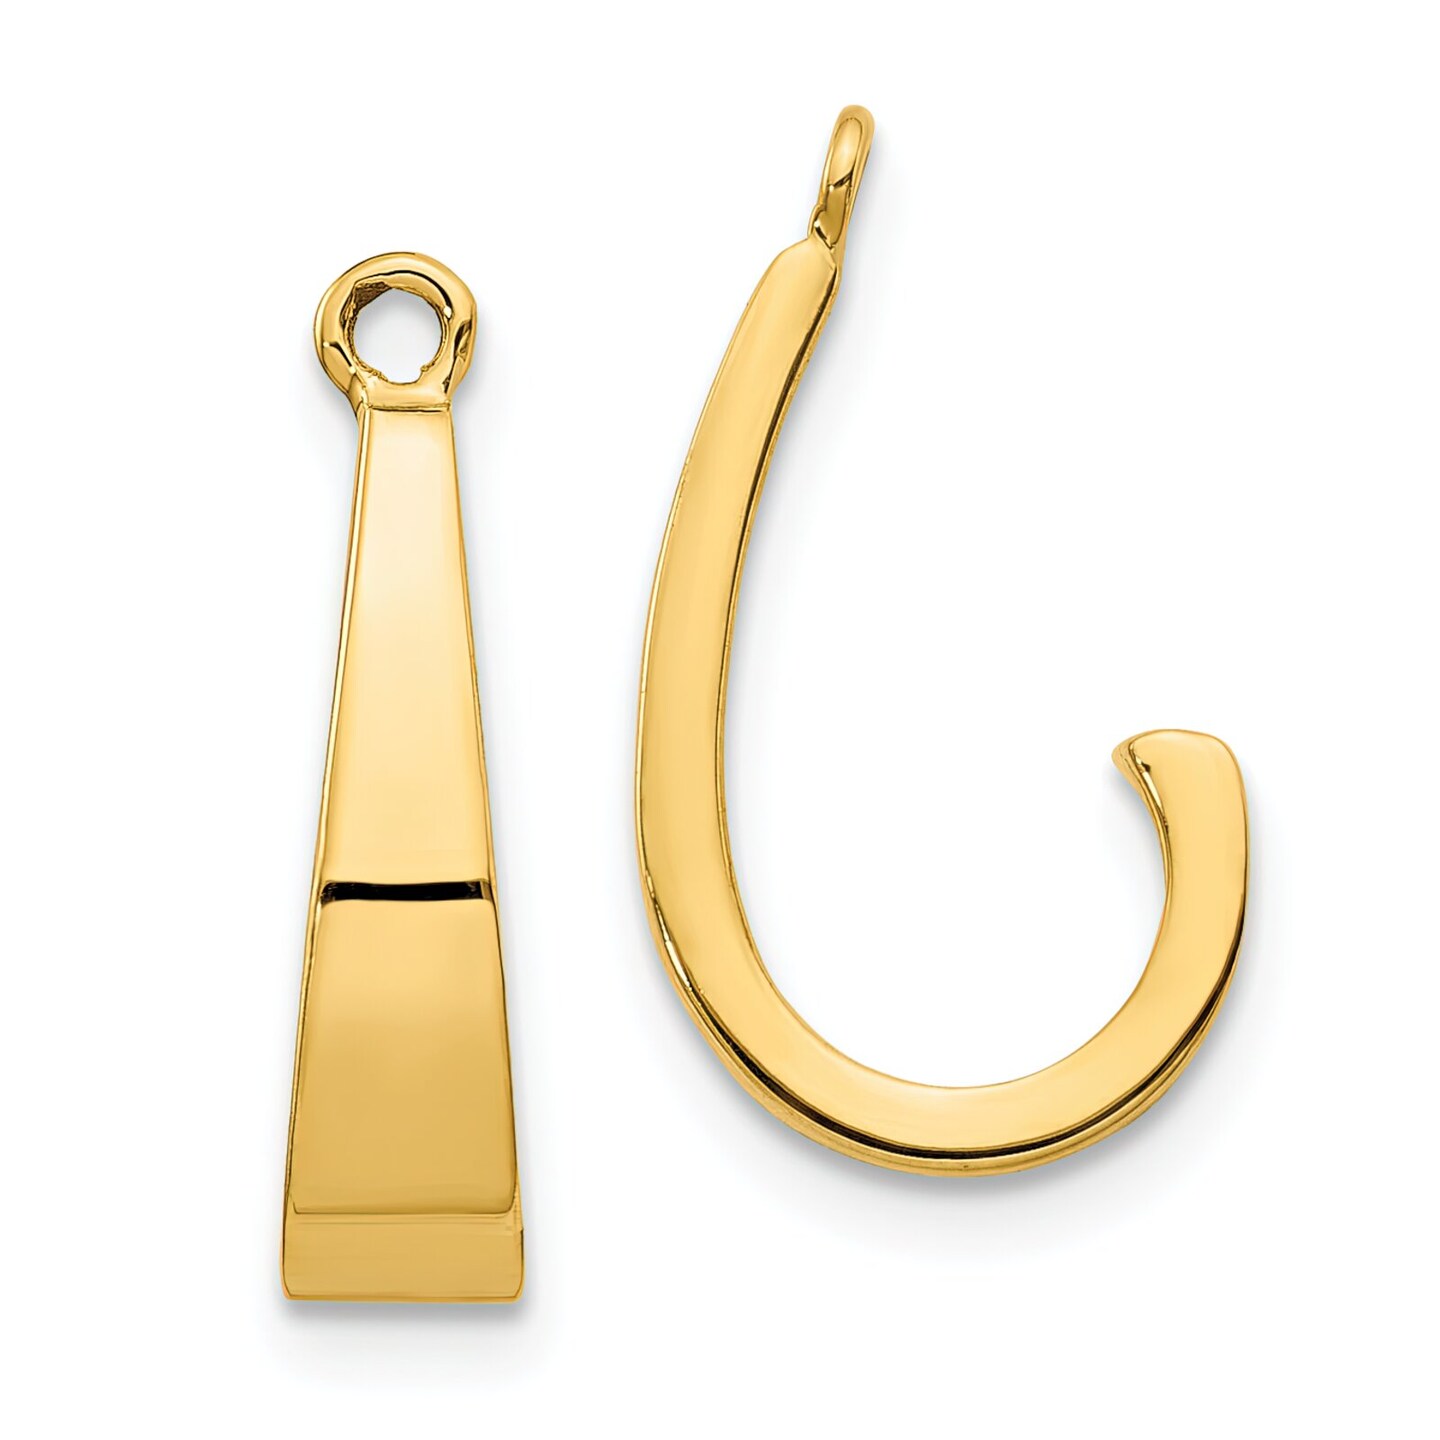 14K Yellow Gold J Hoop Earring Jackets Jewelry 15mm x 4mm